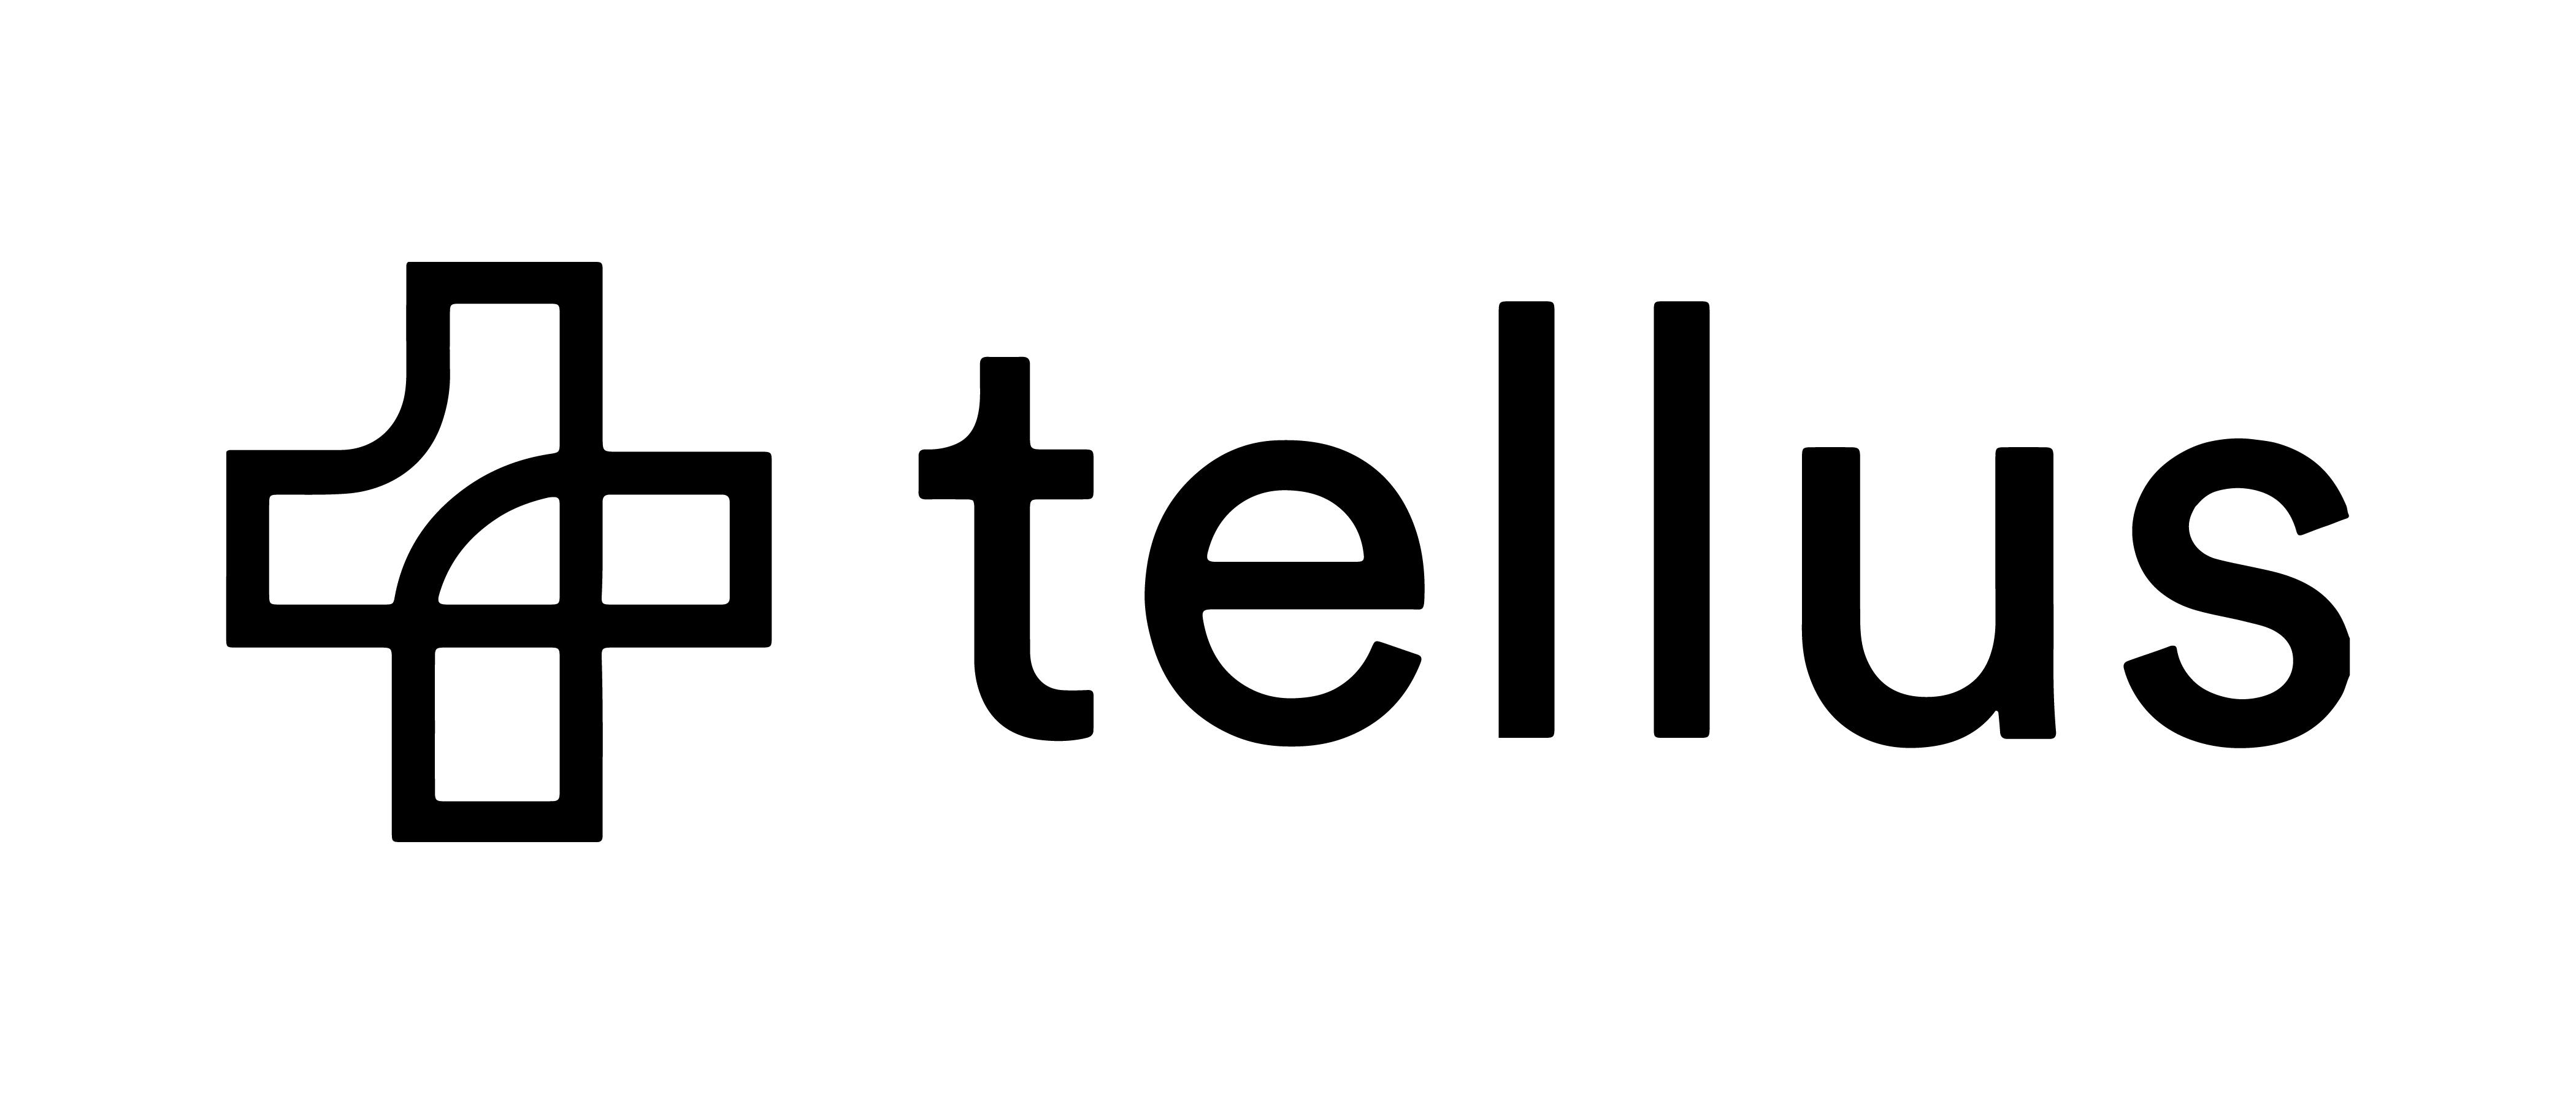 tellus-logo-dark.png